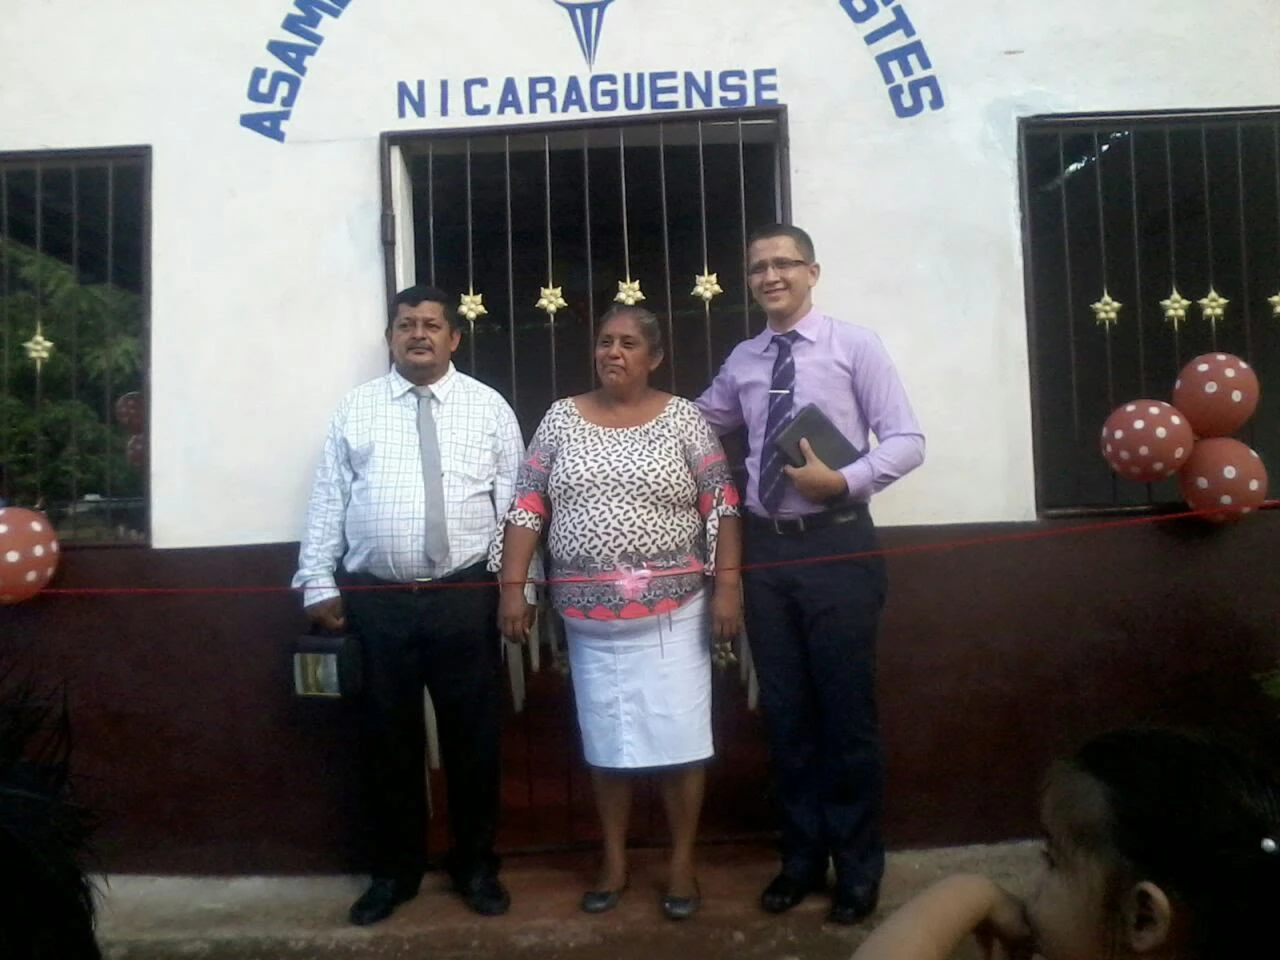 Missões ADRP - Nicarágua, América Central - Cofradia, Departamento